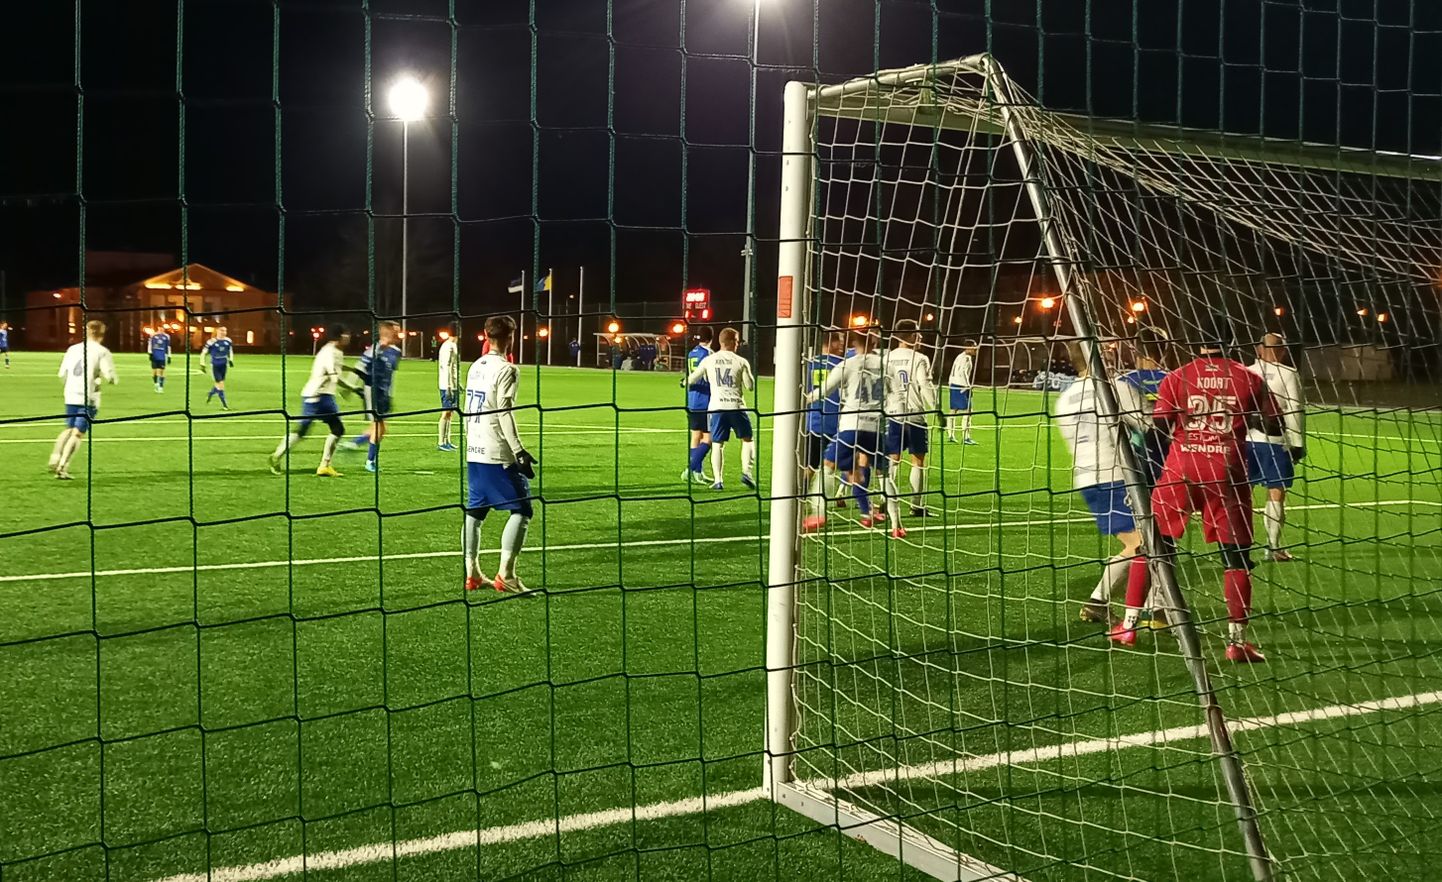 В первой переходной игре первой лиги, проходившей в субботу вечером при трехградусном морозе на кохтла-ярвеском поле с искусственным газоном, ида-вируский "FC Alliance" уверенно переиграл команду Пярну - 4:1.